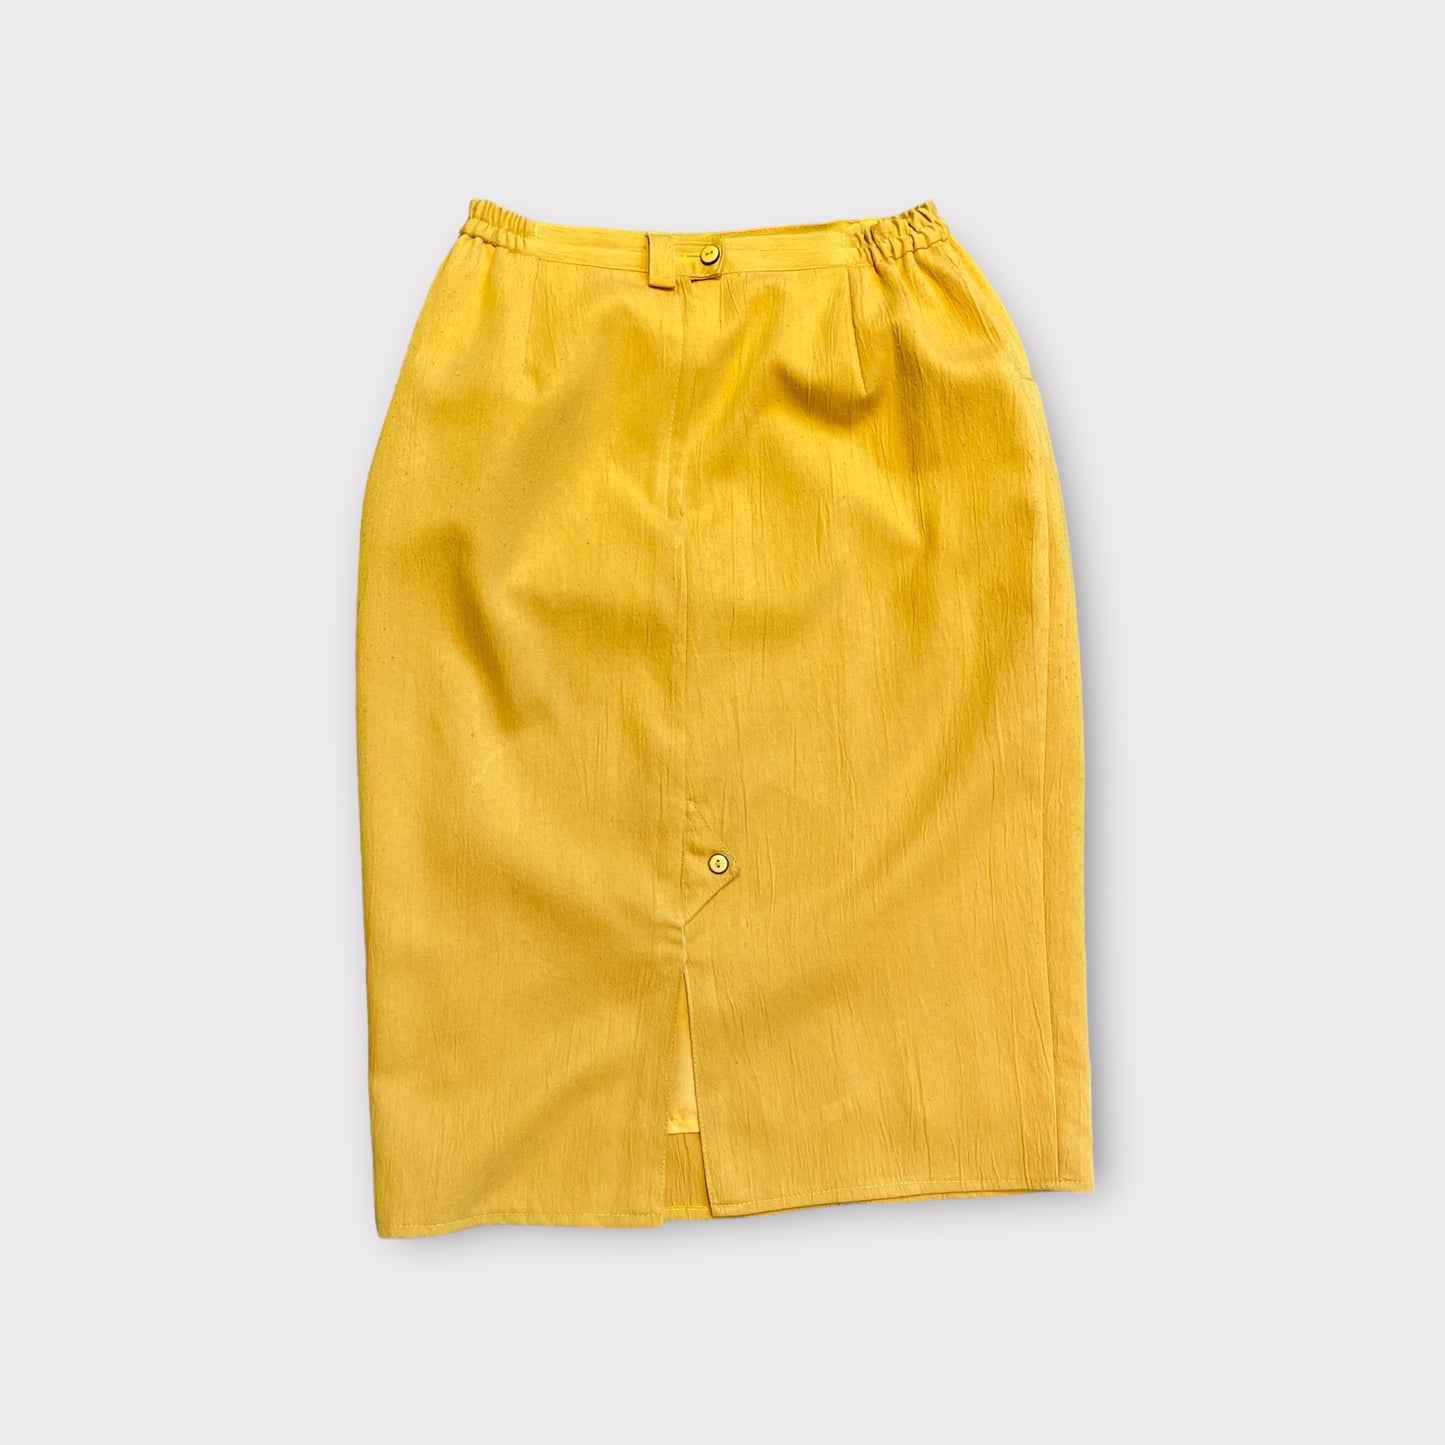 Yellow mustard skirt - high waist